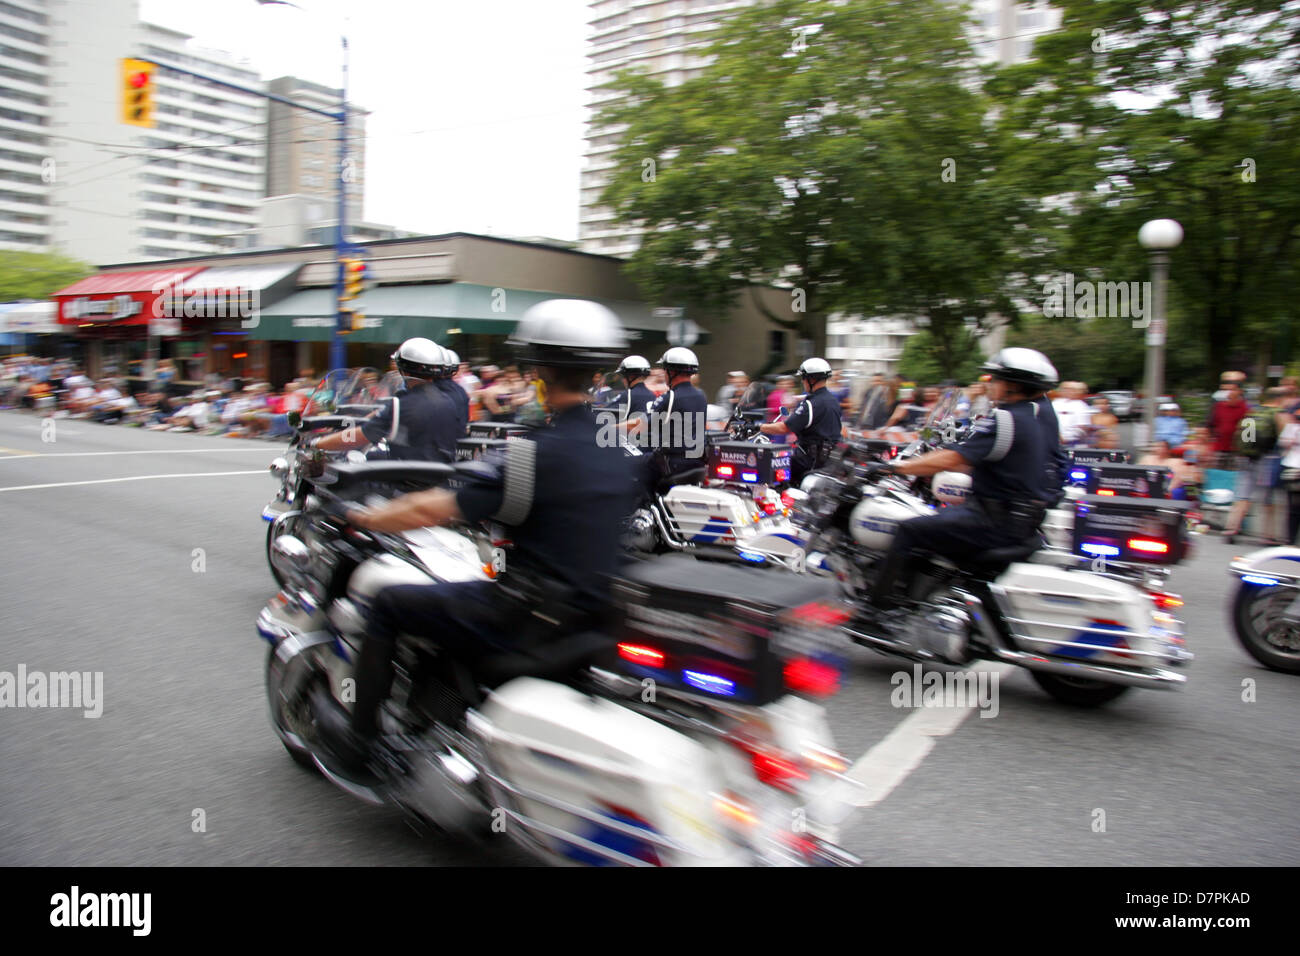 gay motorcycle cop escort